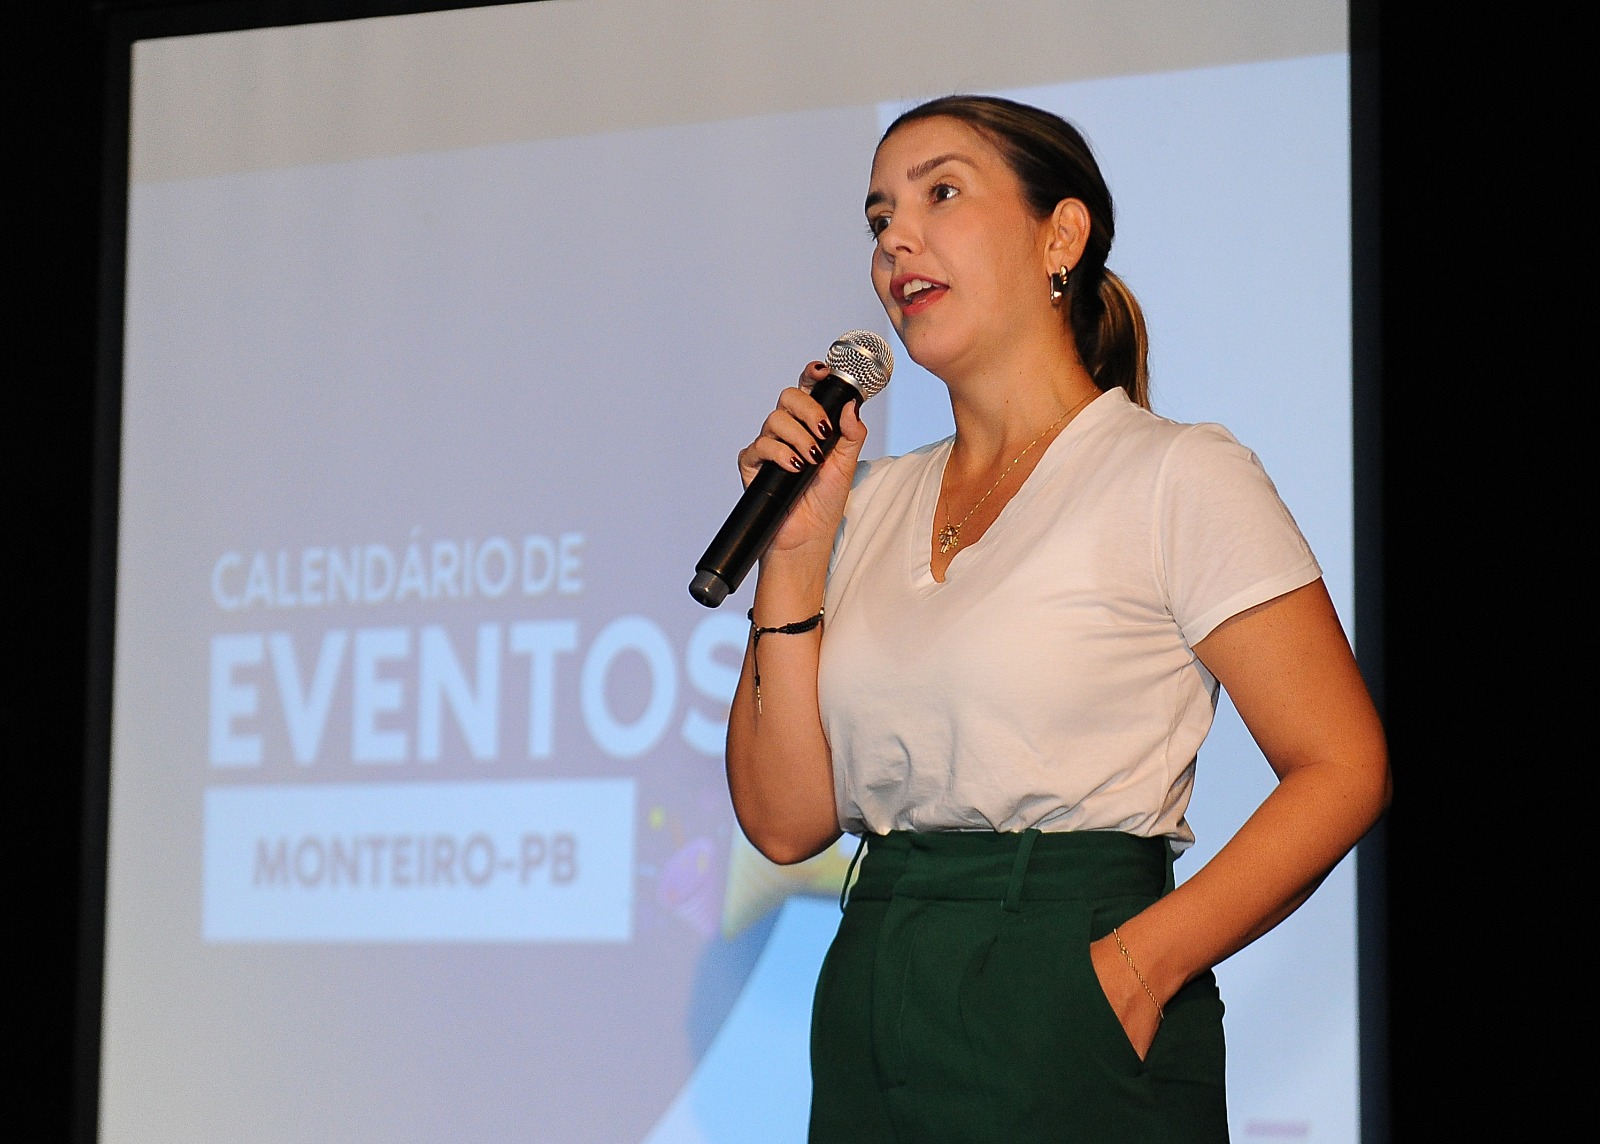 Lancamento-Calendario-4 Algodão: Prefeita do Cariri paraibano, Anna Lorena, repercute em revista internacional “Forbes” após fala sobre sustentabilidade lucrativa